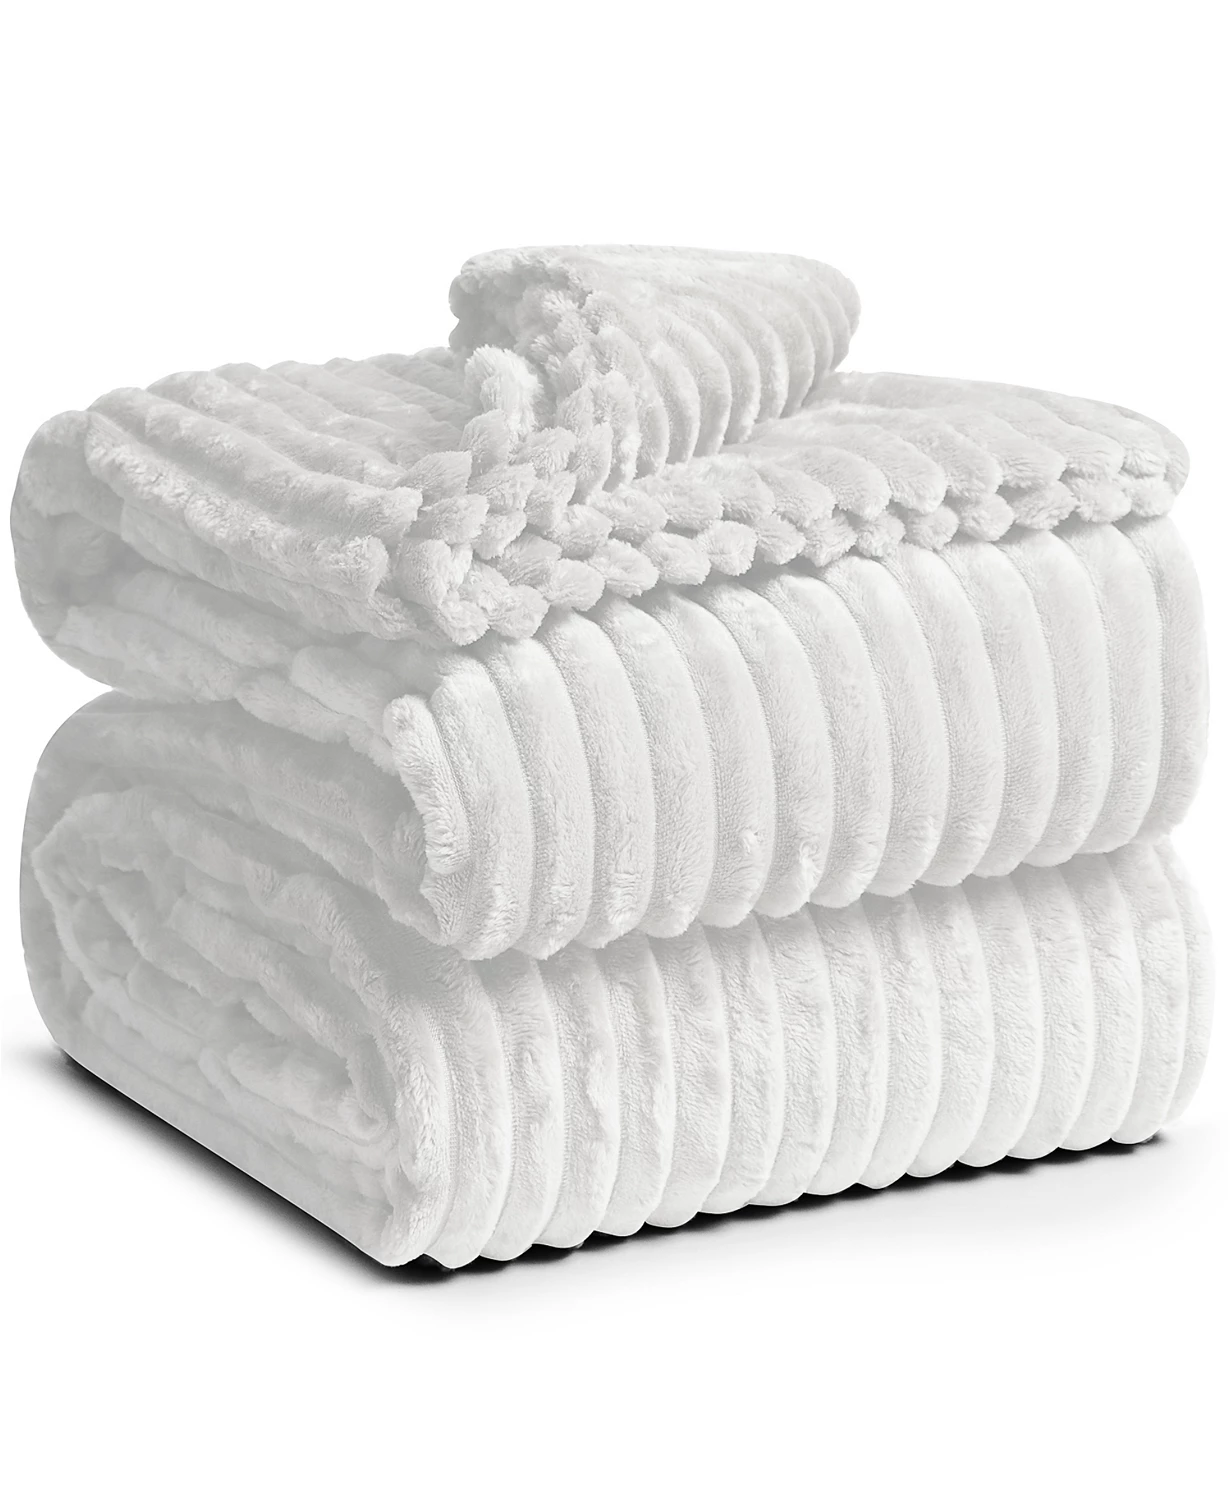 Nestl Bedding Cut Plush Lightweight Super Soft Fuzzy Luxury Bed Throw Blanket $14.99